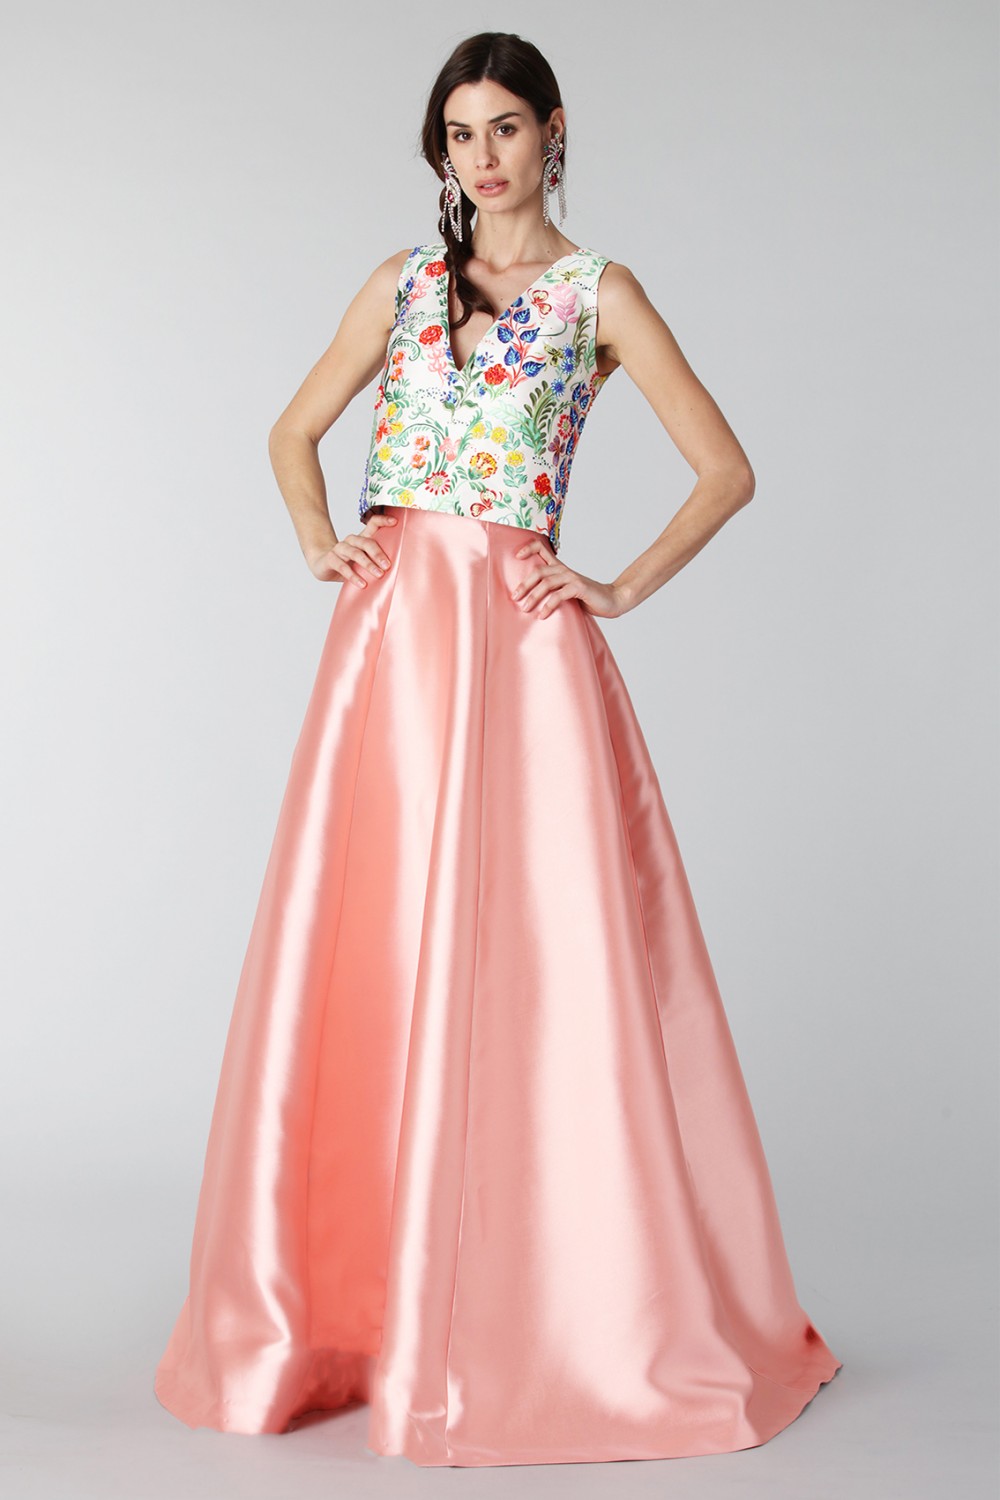 Vendita Abbigliamento Usato FIrmato - Completo gonna rosa e top floreale in seta - Tube Gallery - Drexcode -7